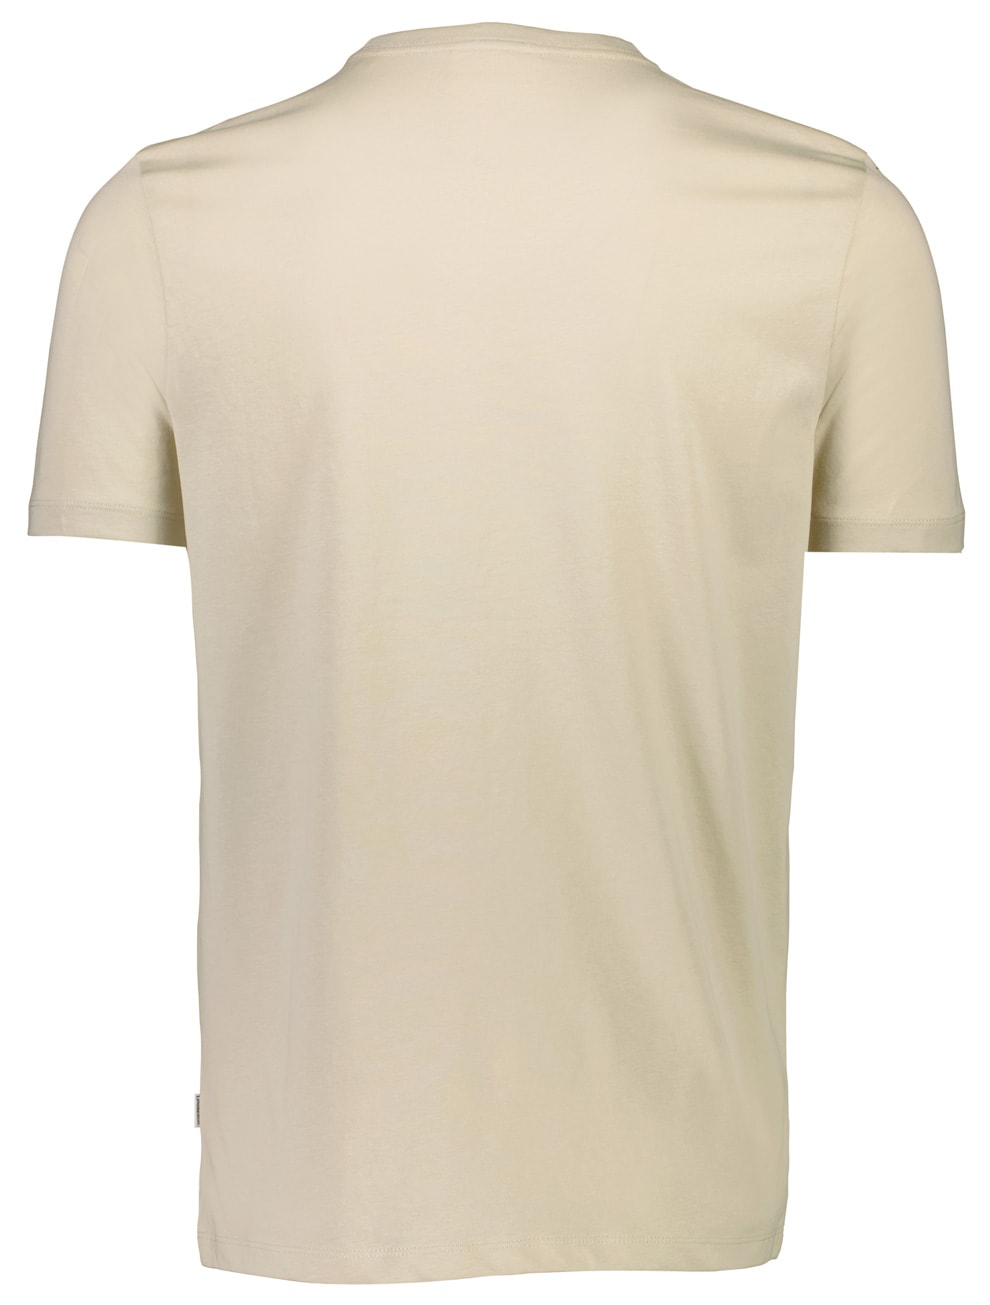 LINDBERGH T-Shirt, mit Logo und Rundhalsausschnitt